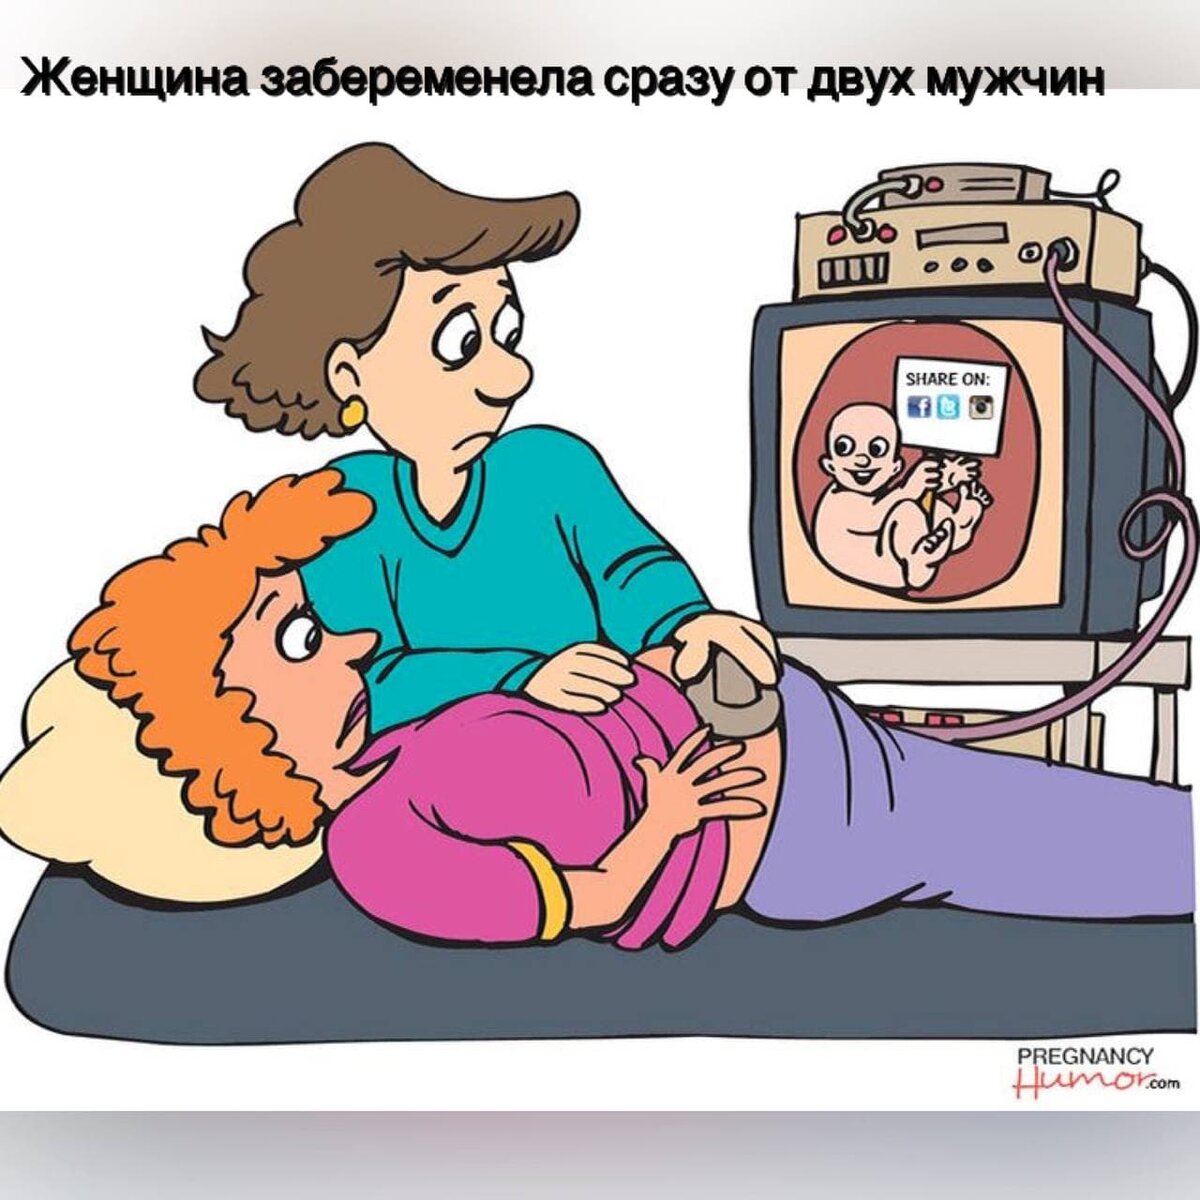 Pregnancy cartoon funny